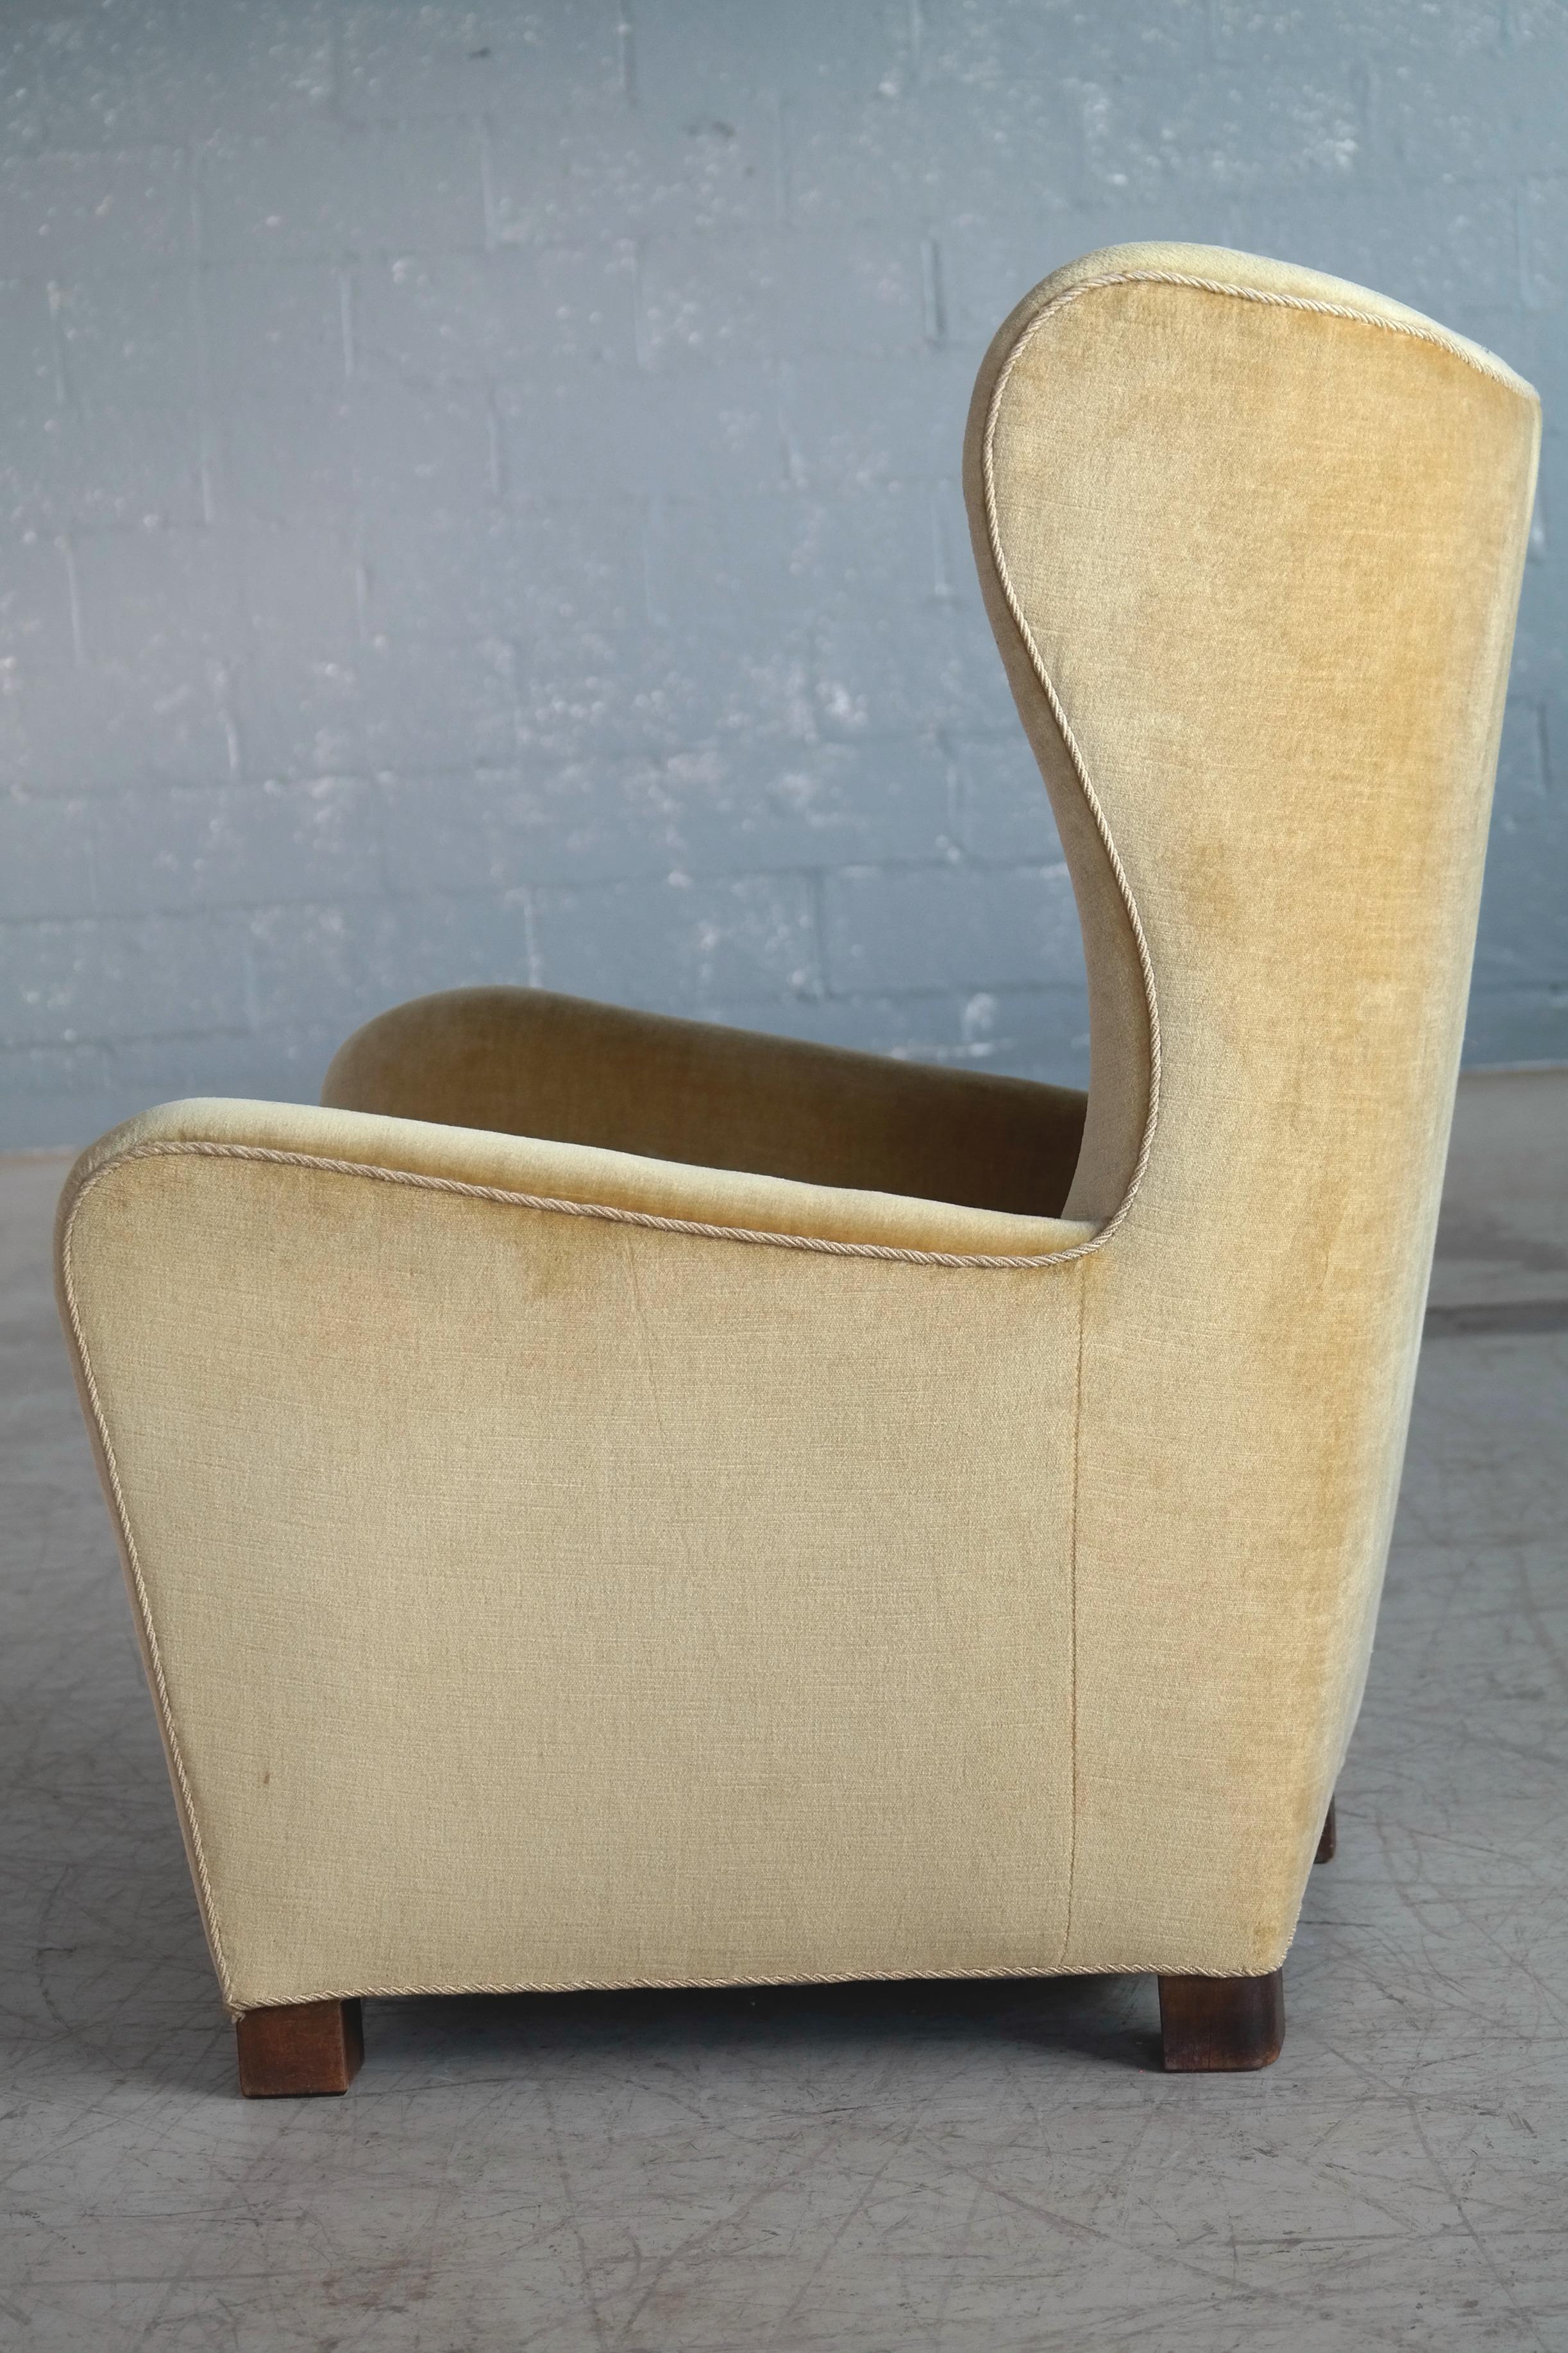 Fritz Hansen Model 1672 High Back Mohair Lounge Chair Danish Midcentury 1940s 3